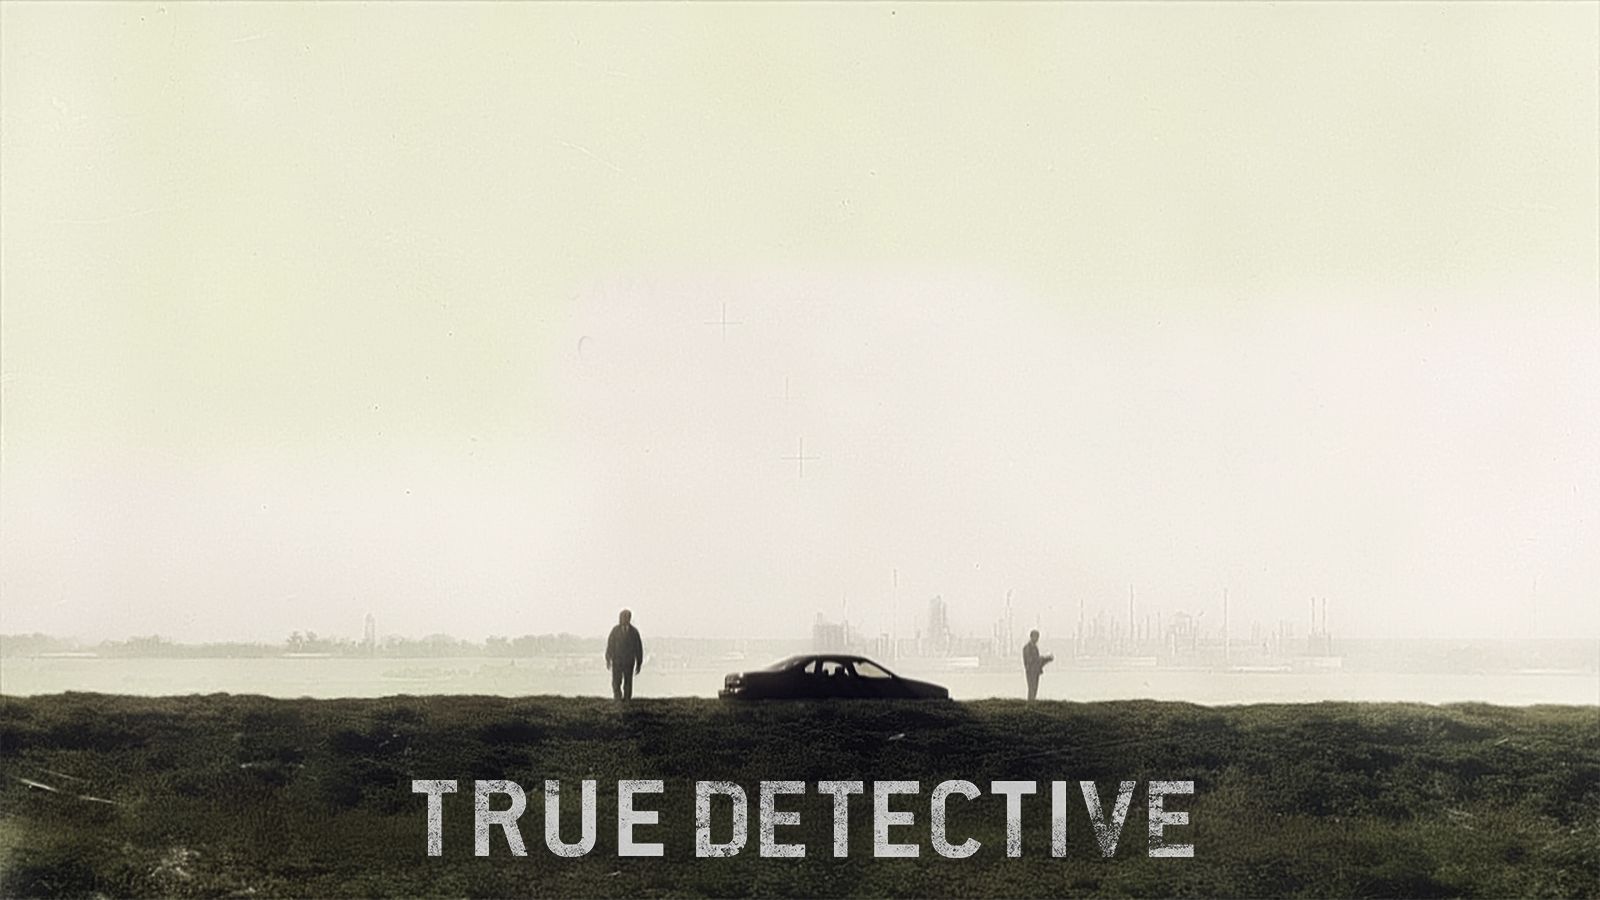 True Detective Background. True Love